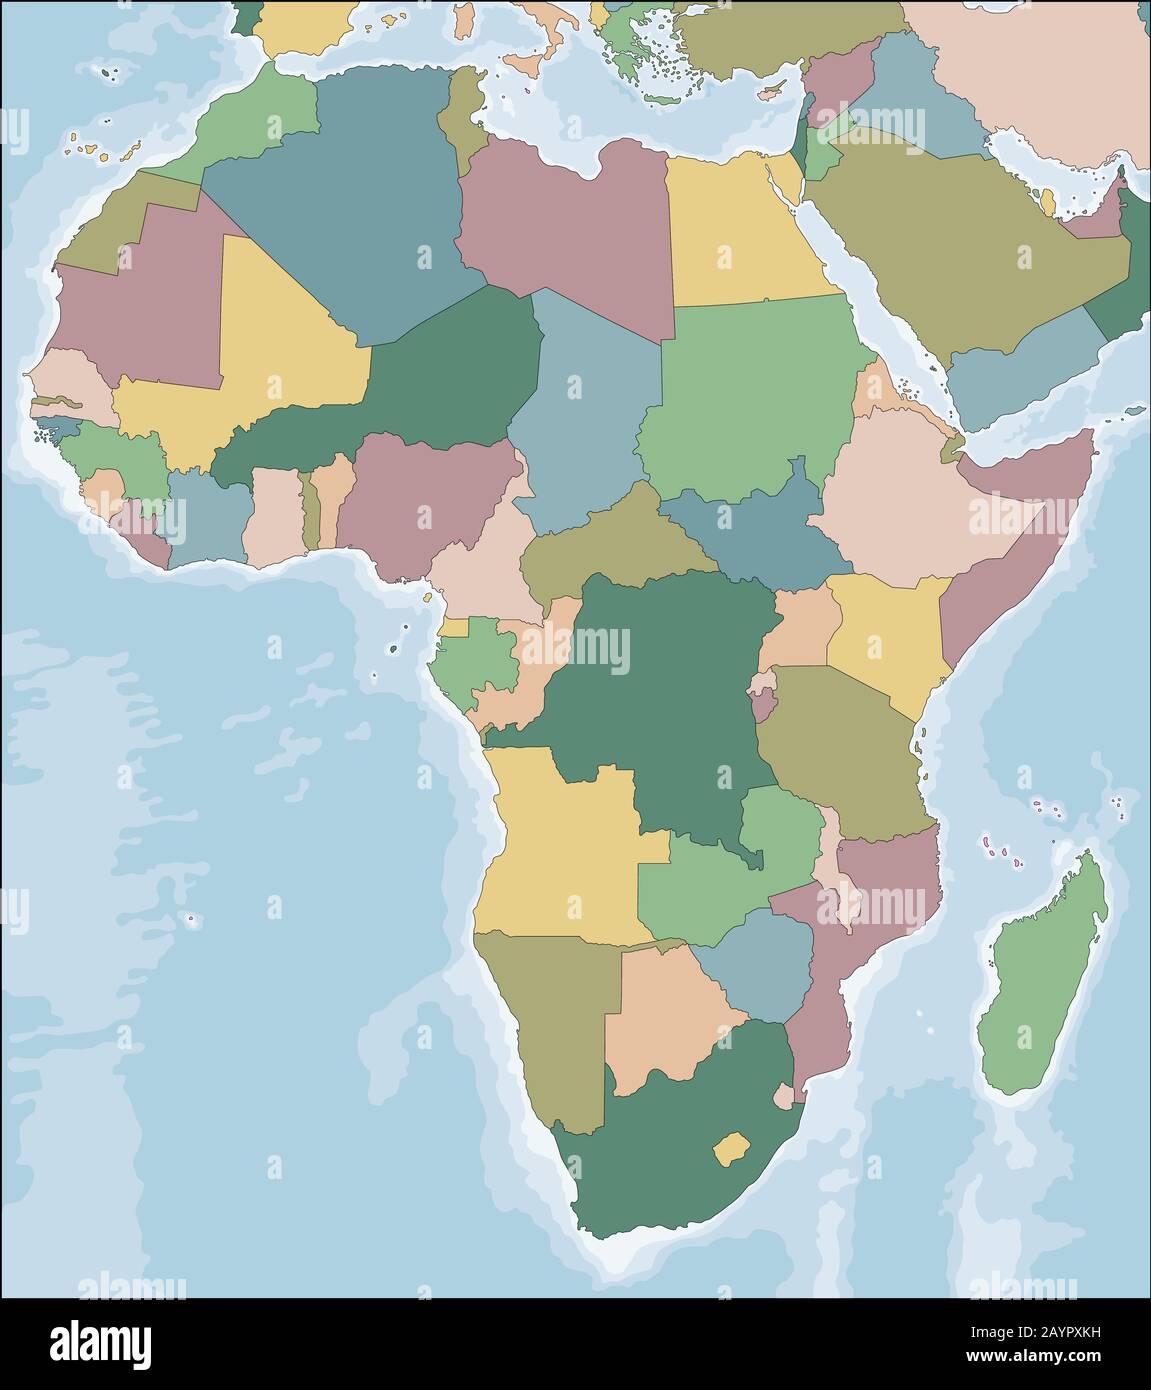 Carte du continent africain avec les pays Illustration de Vecteur